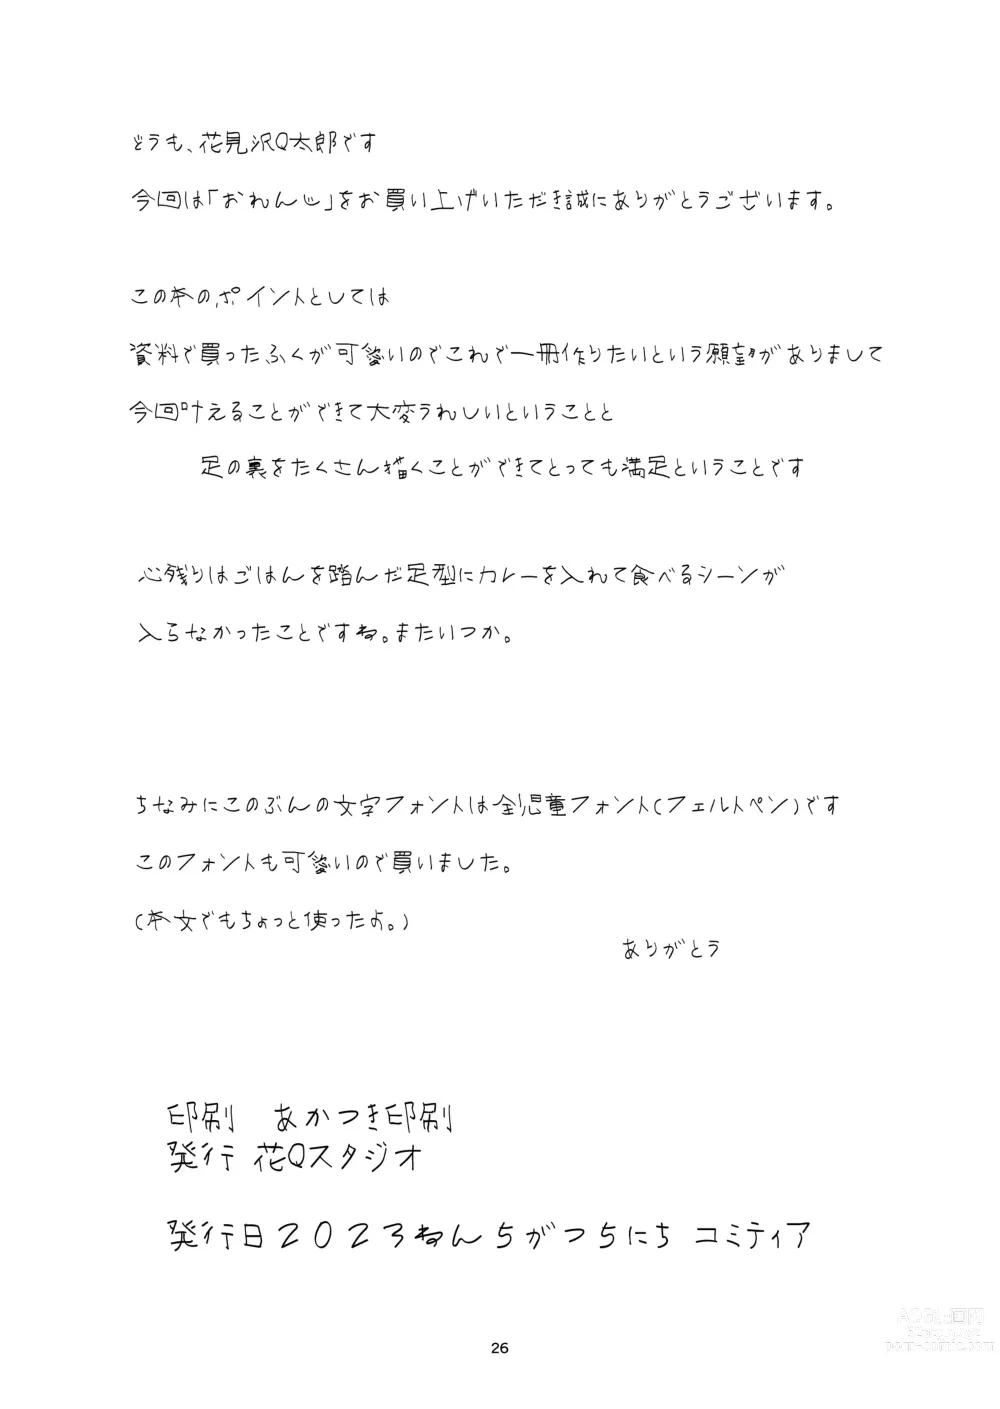 Page 26 of doujinshi ORANGE